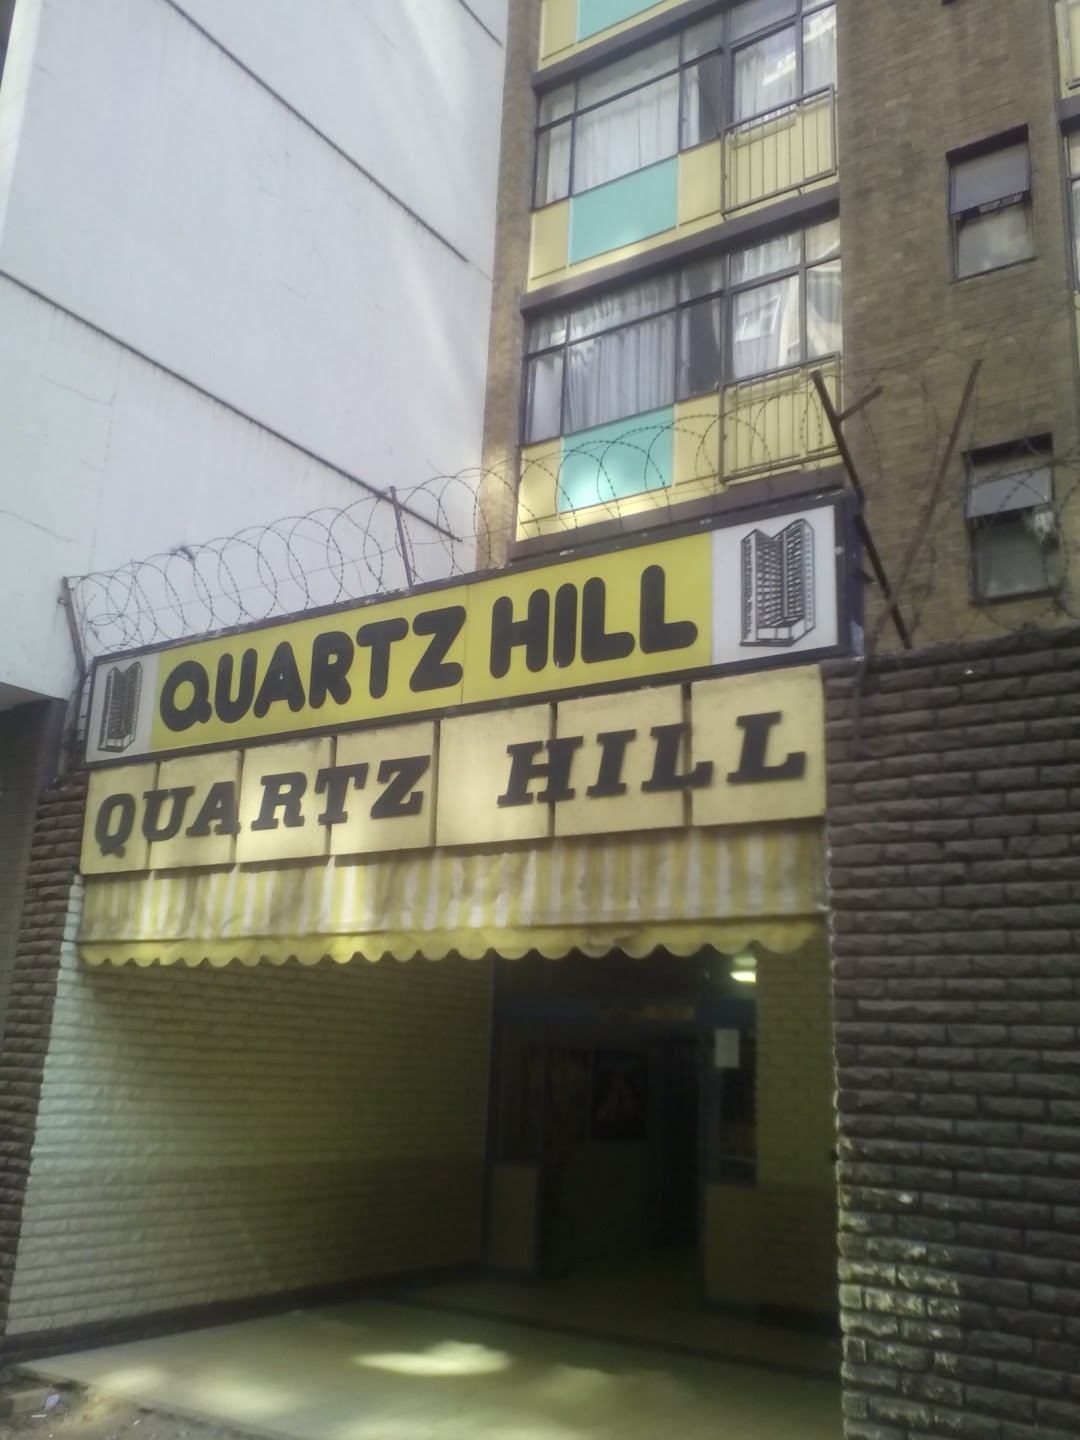 Quartz Hill